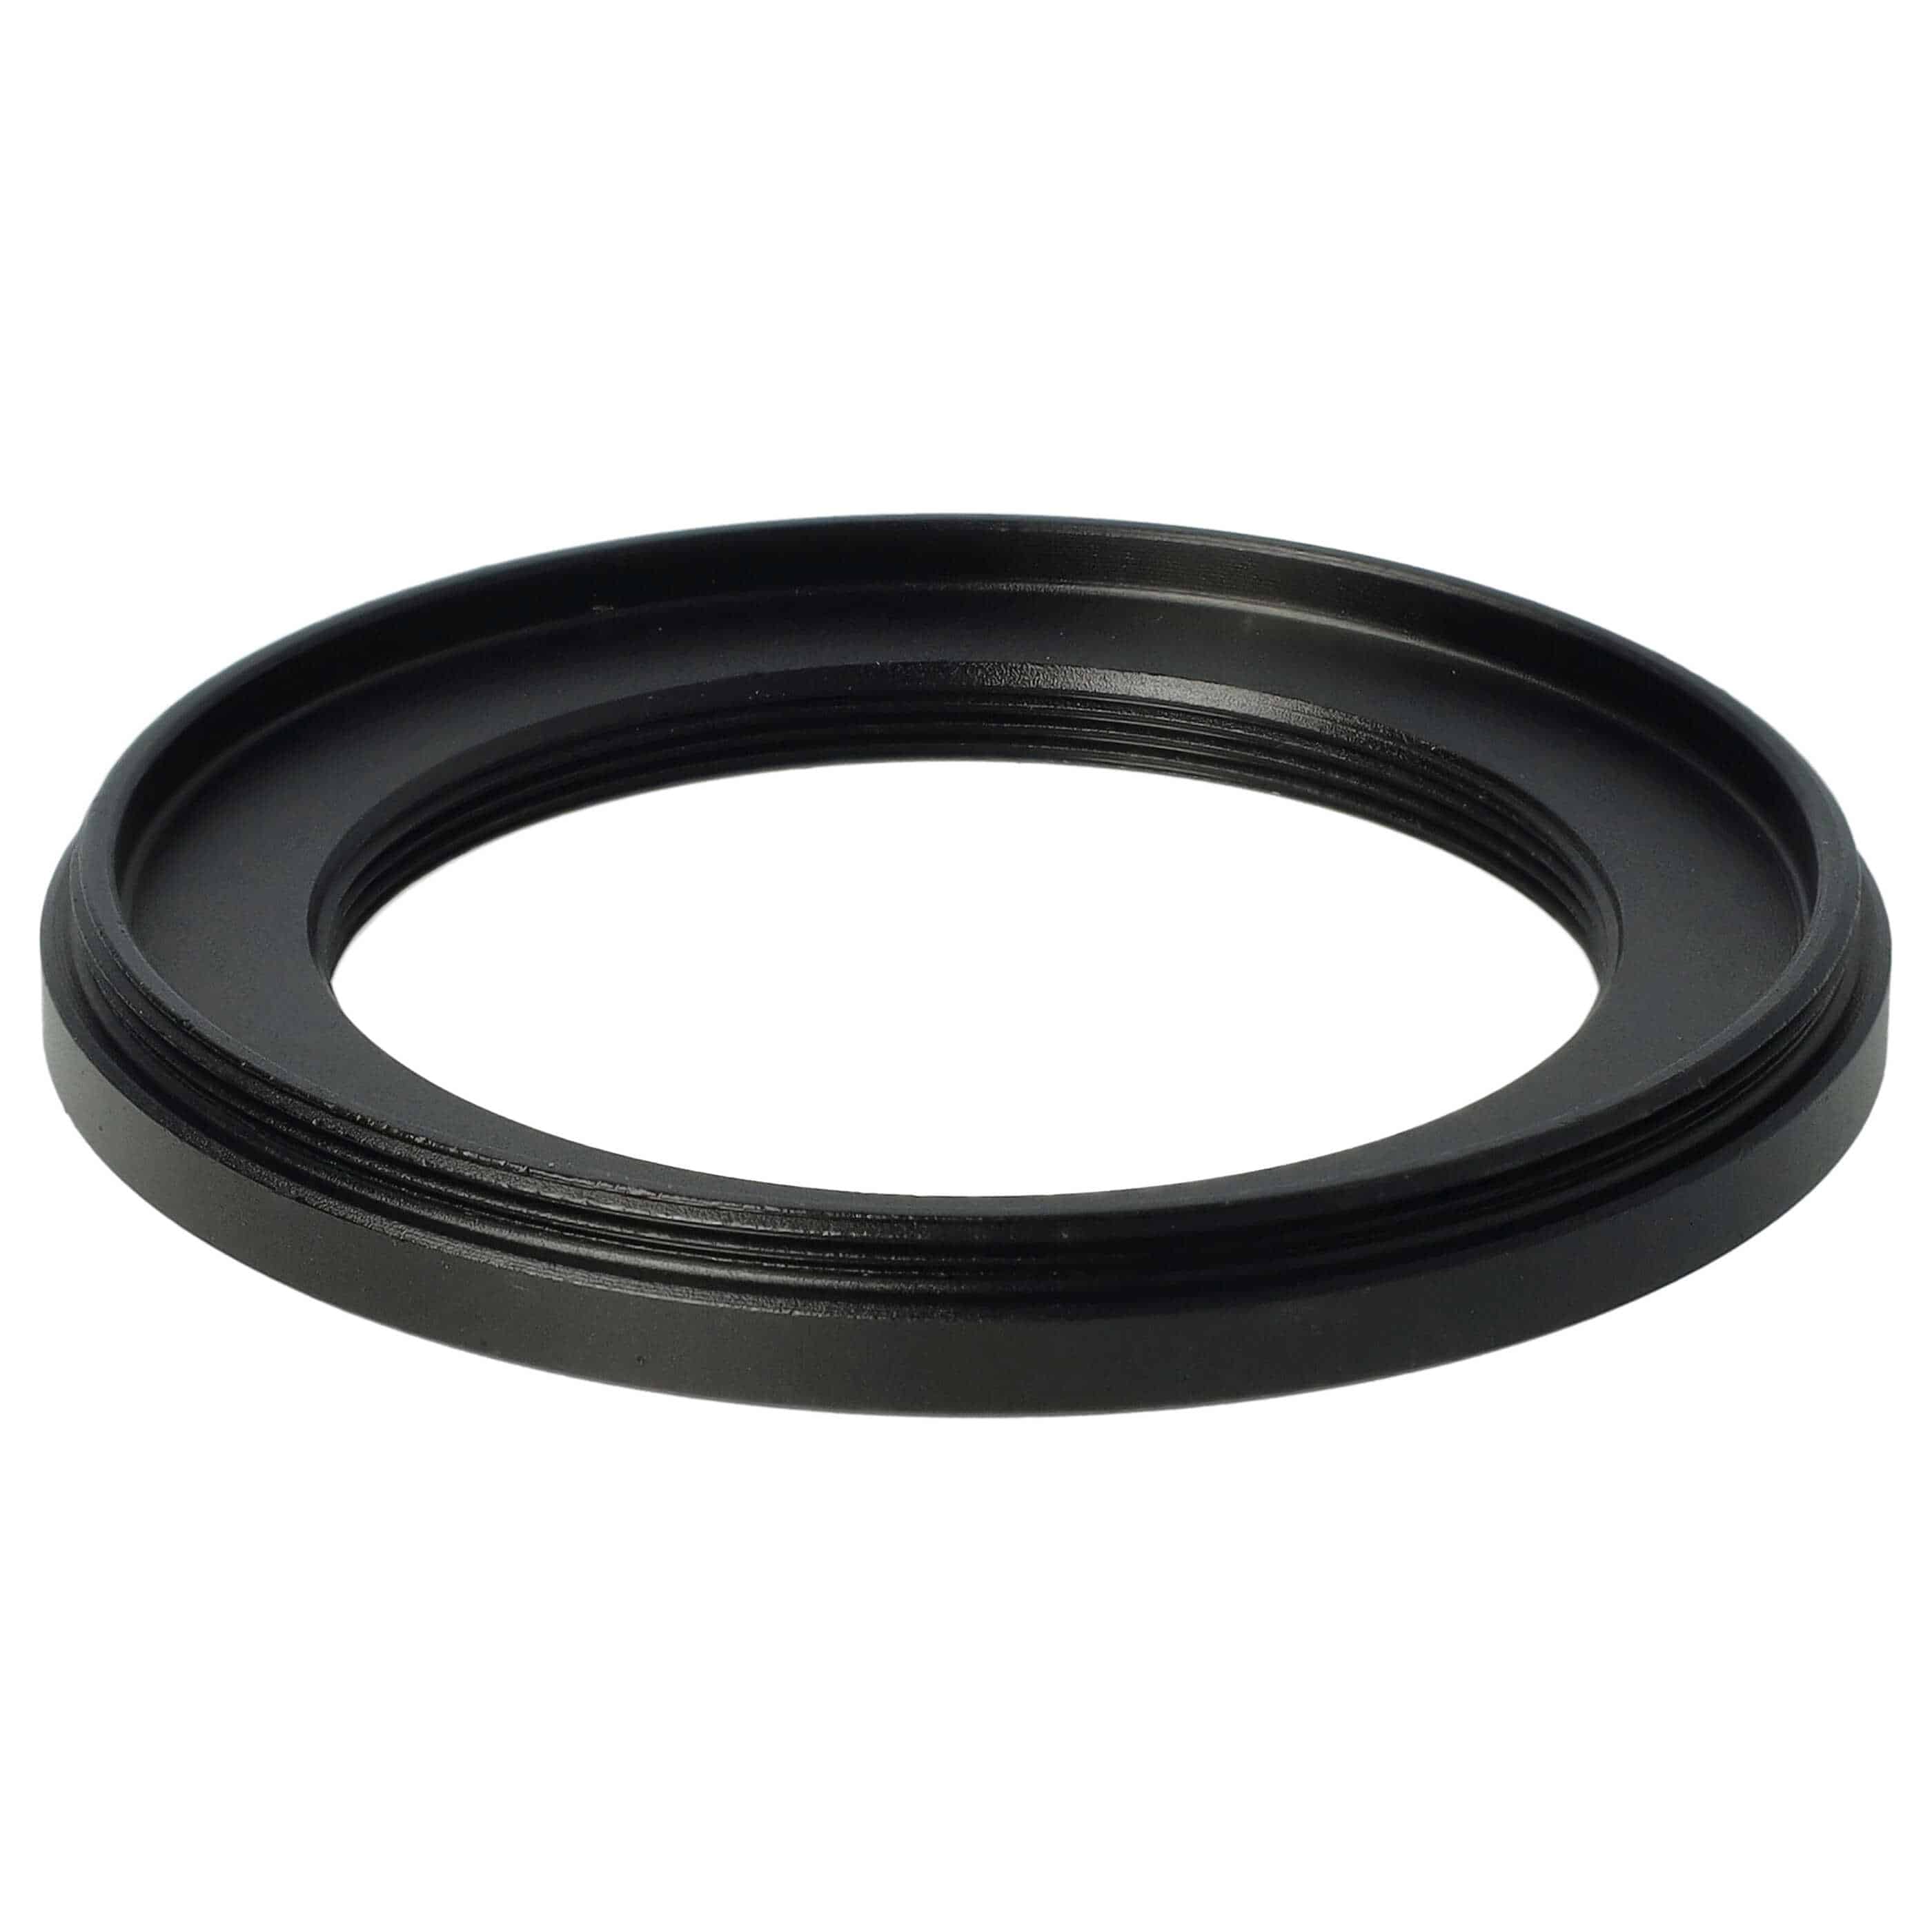 Redukcja filtrowa adapter Step-Down 58 mm - 42 mm pasująca do obiektywu - metal, czarny